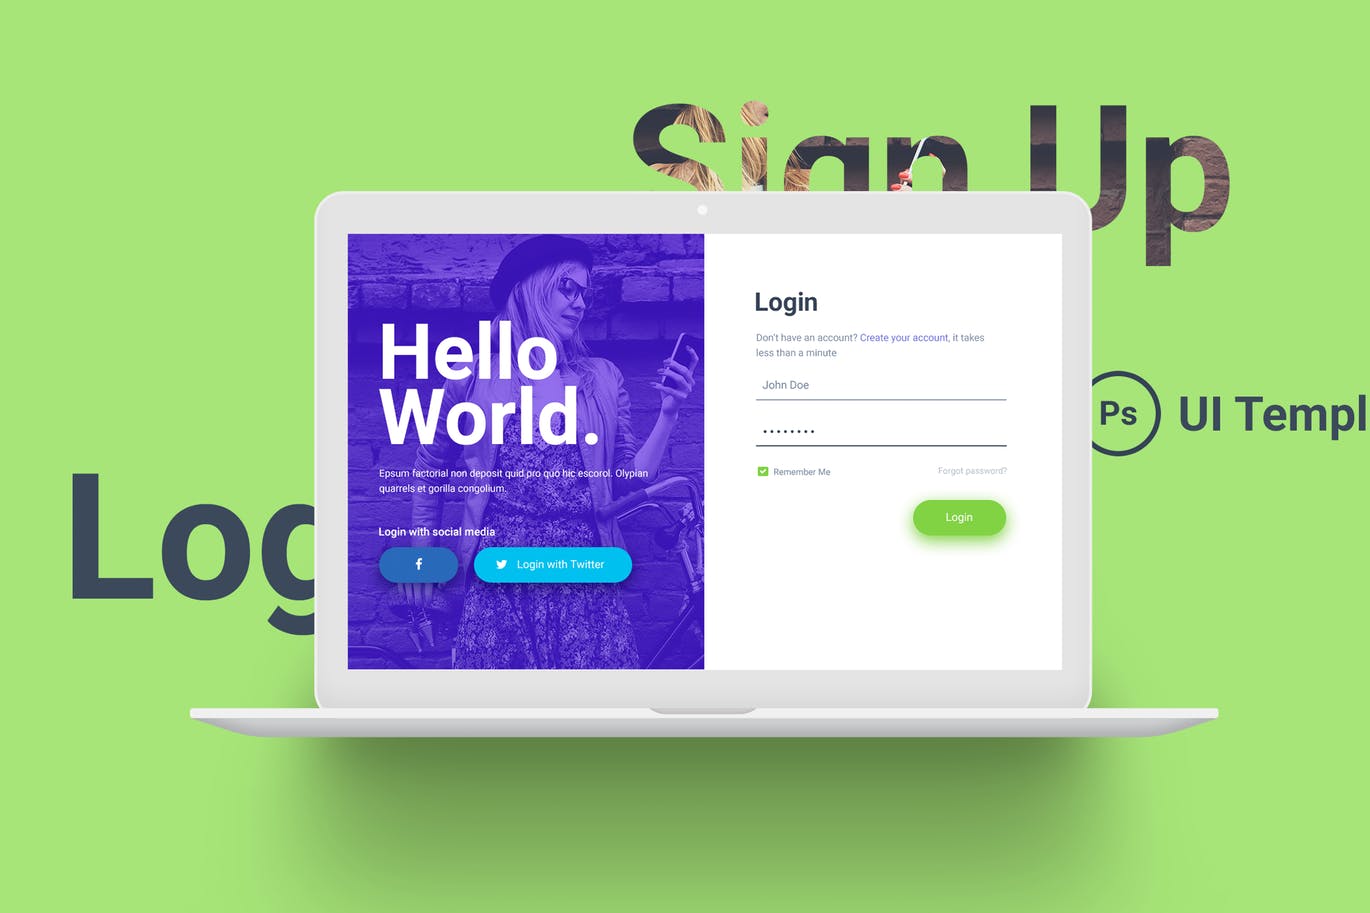 网站注册登录表单独立页面设计第一素材精选模板 Hello World Login & Registration Form插图